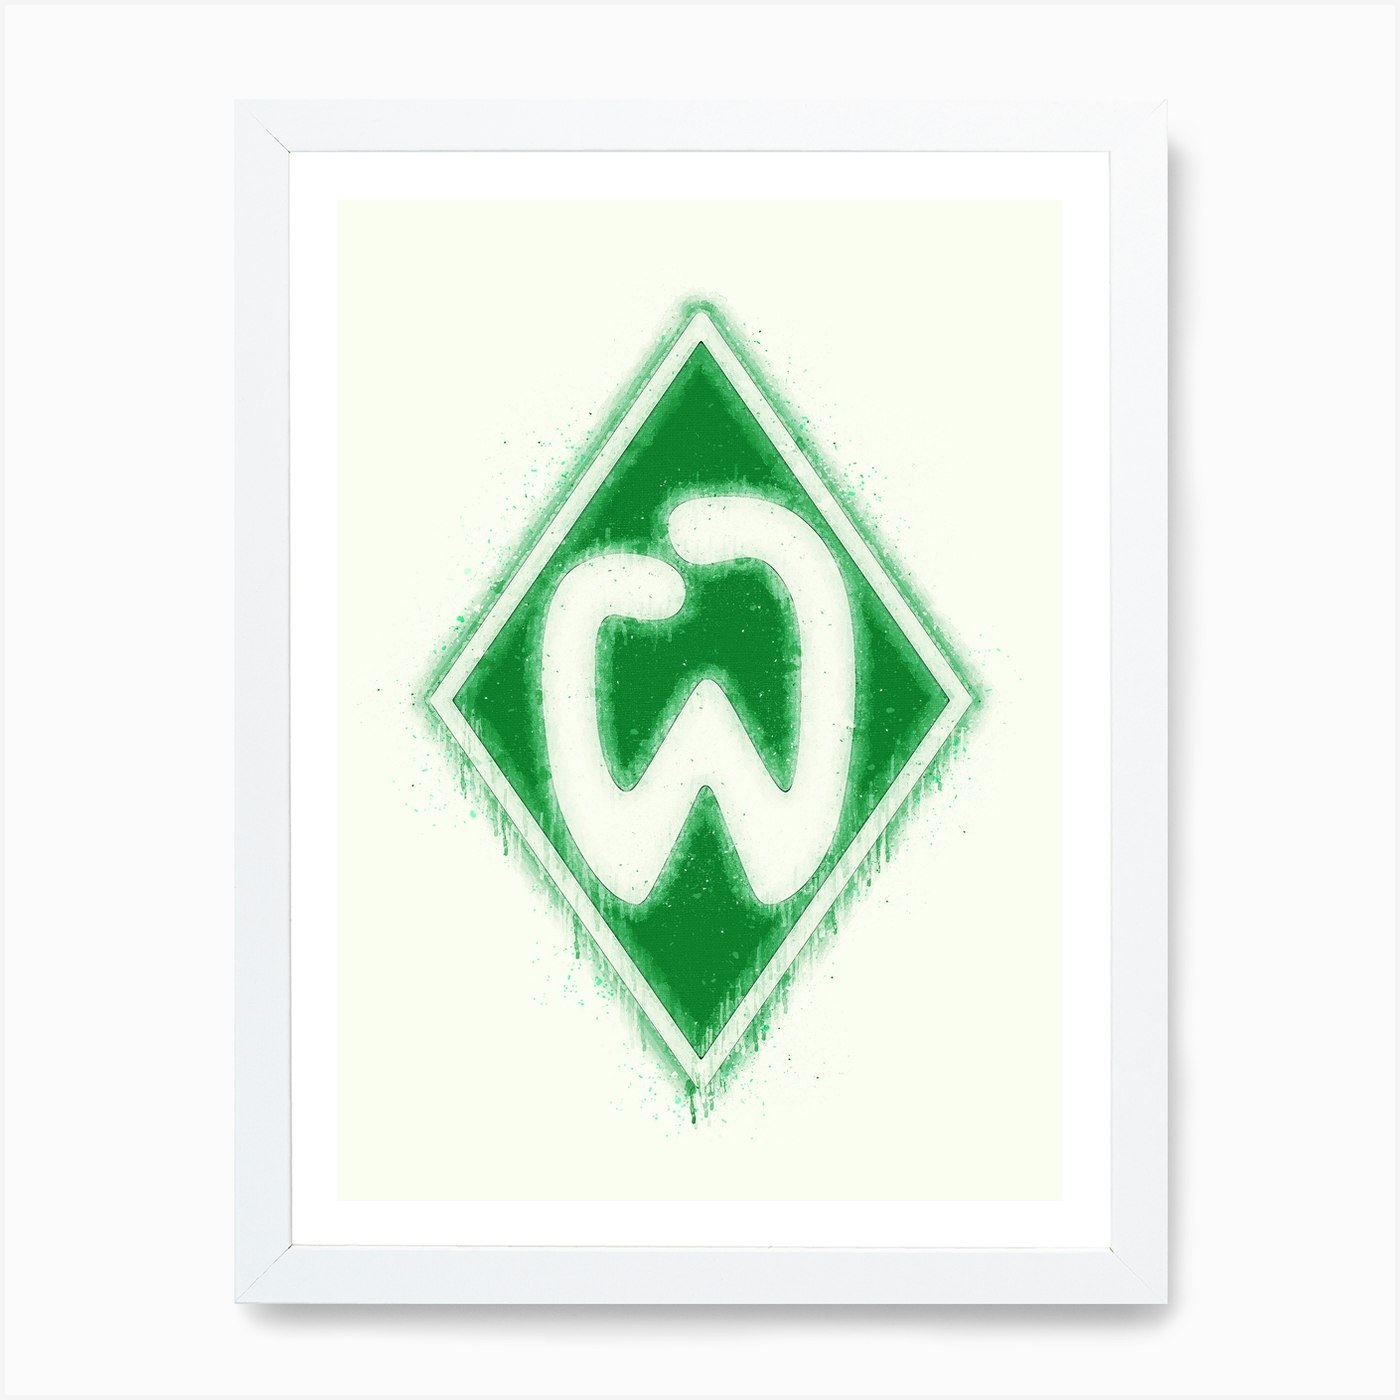 Sv Werder Bremen 1 Art Print by KunStudio - Fy